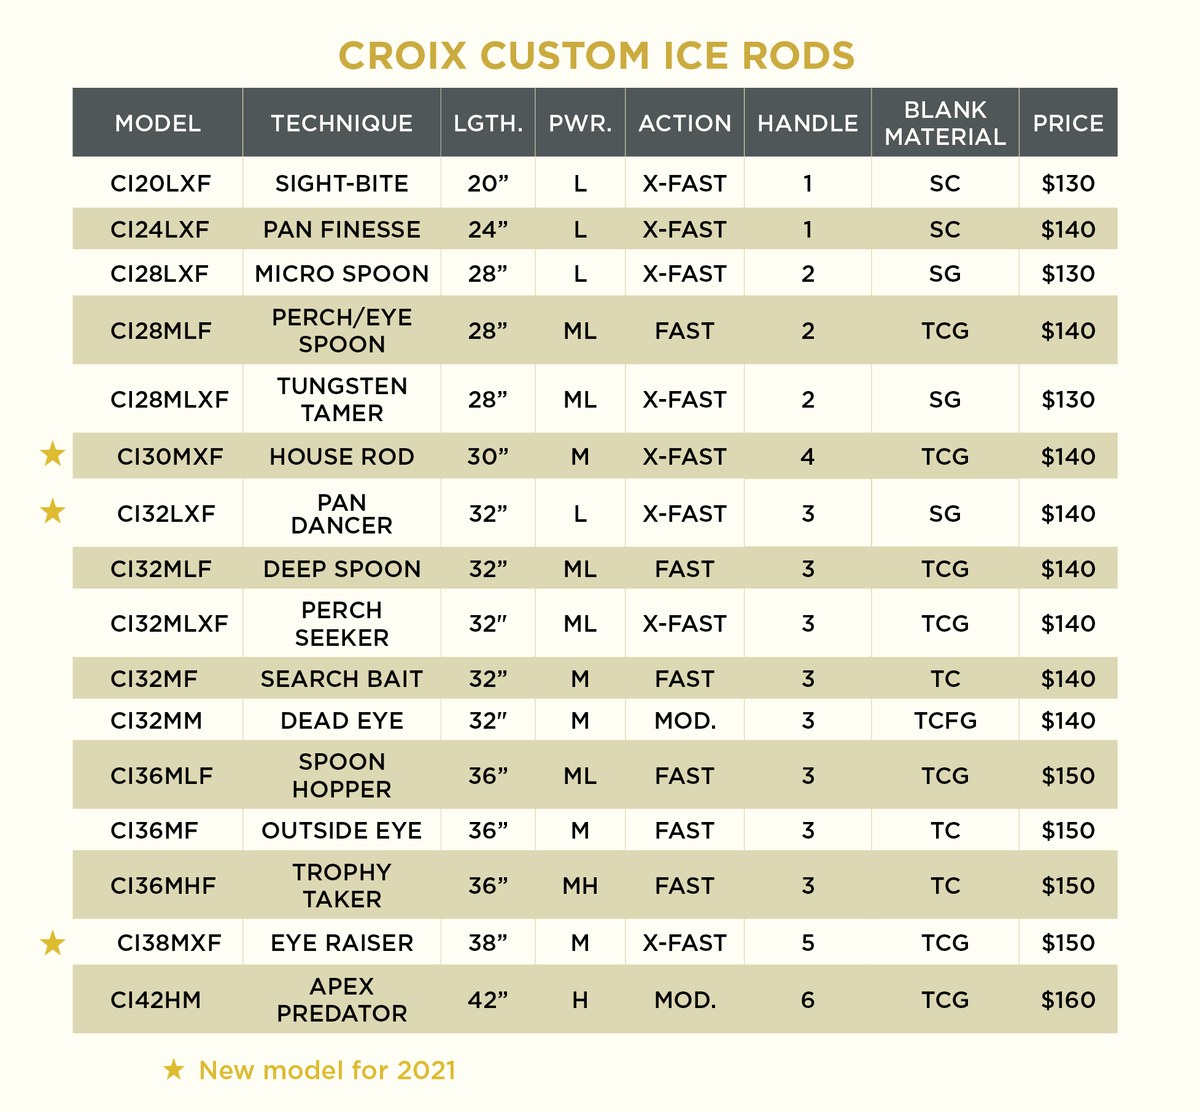 St. Croix Custom Ice Rods